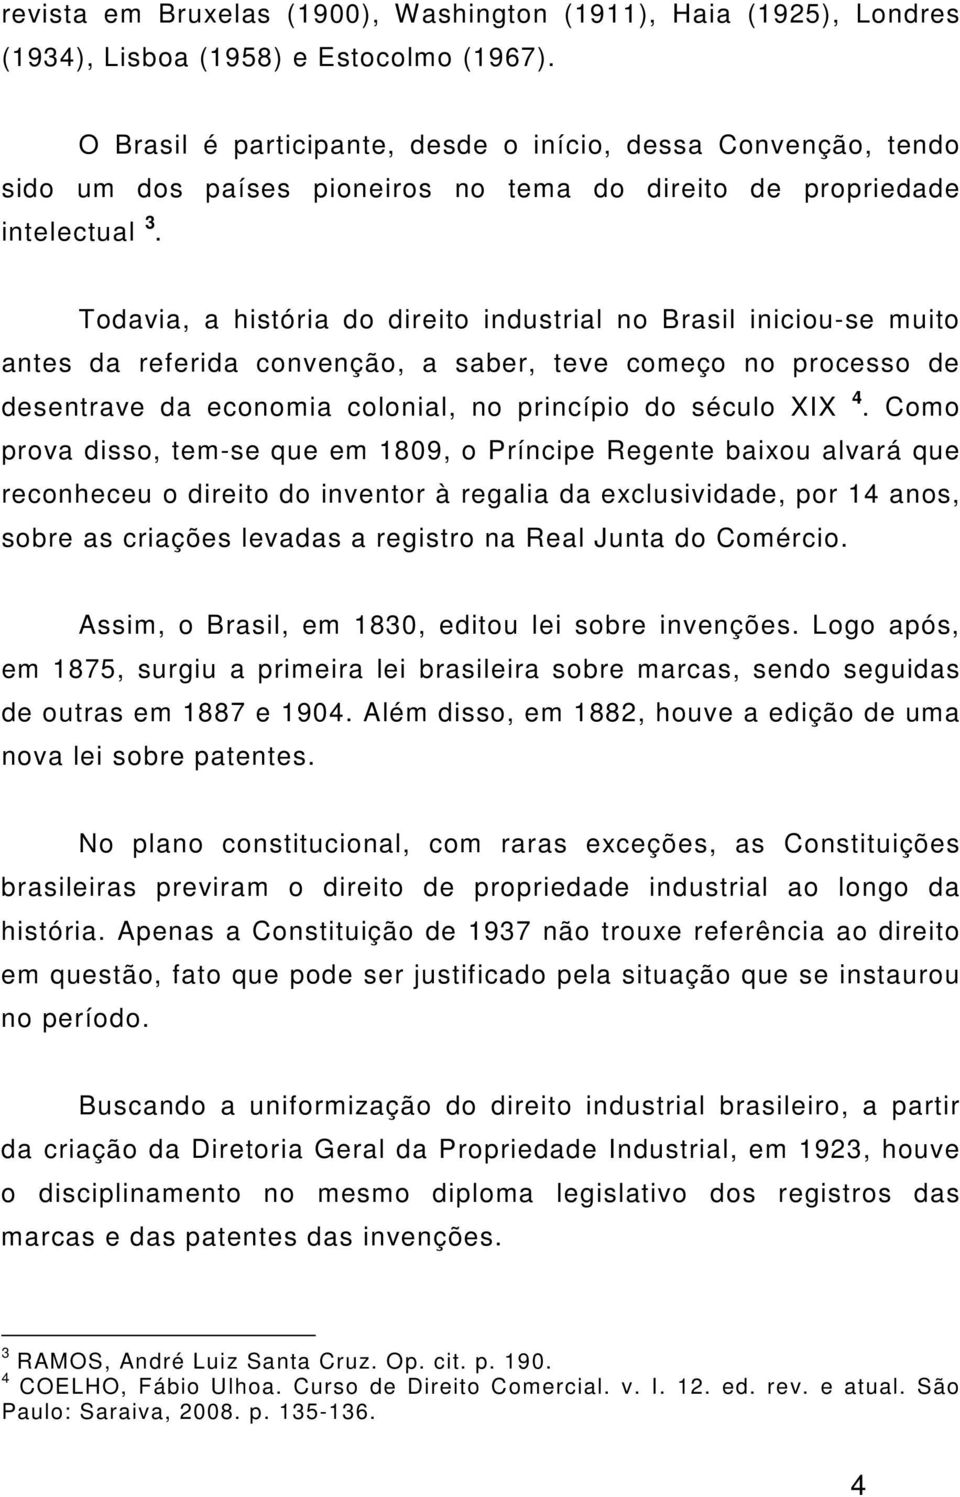 Todavia, a história do direito industrial no Brasil iniciou-se muito antes da referida convenção, a saber, teve começo no processo de desentrave da economia colonial, no princípio do século XIX 4.